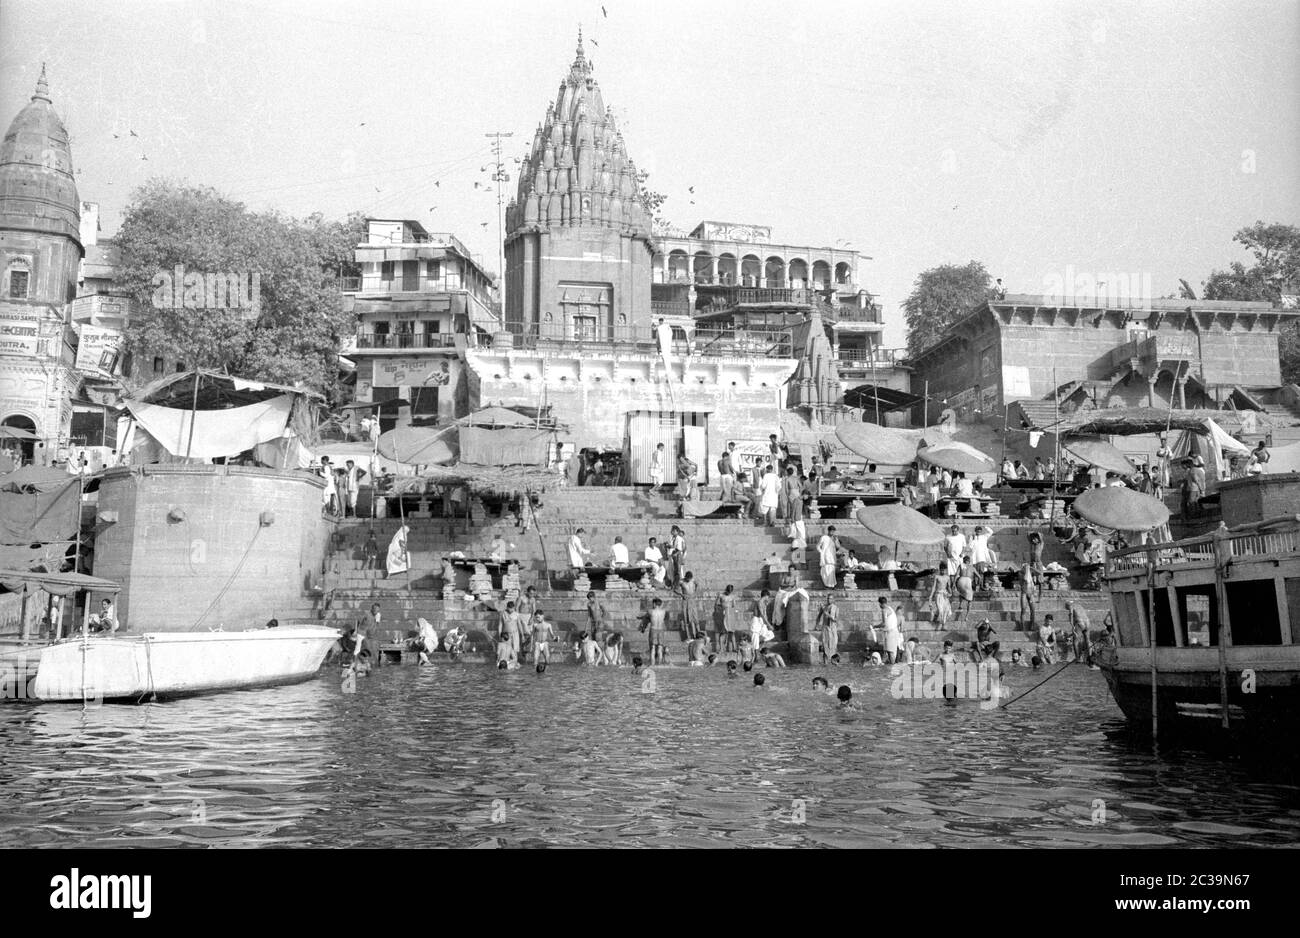 Les hindous se baignent dans le Saint Gange de la ville indienne de Benares, également connue sous le nom de Varanasi ou Kashi. Selon la légende, la ville de plus de 2500 ans est la ville de Shiva, l'une des principales divinités hindoues. Les Hindous croient que les gens d'ici peuvent briser le cycle éternel de naissances et atteindre le salut, tant de croyants viennent à Benares pour mourir ici. Banque D'Images